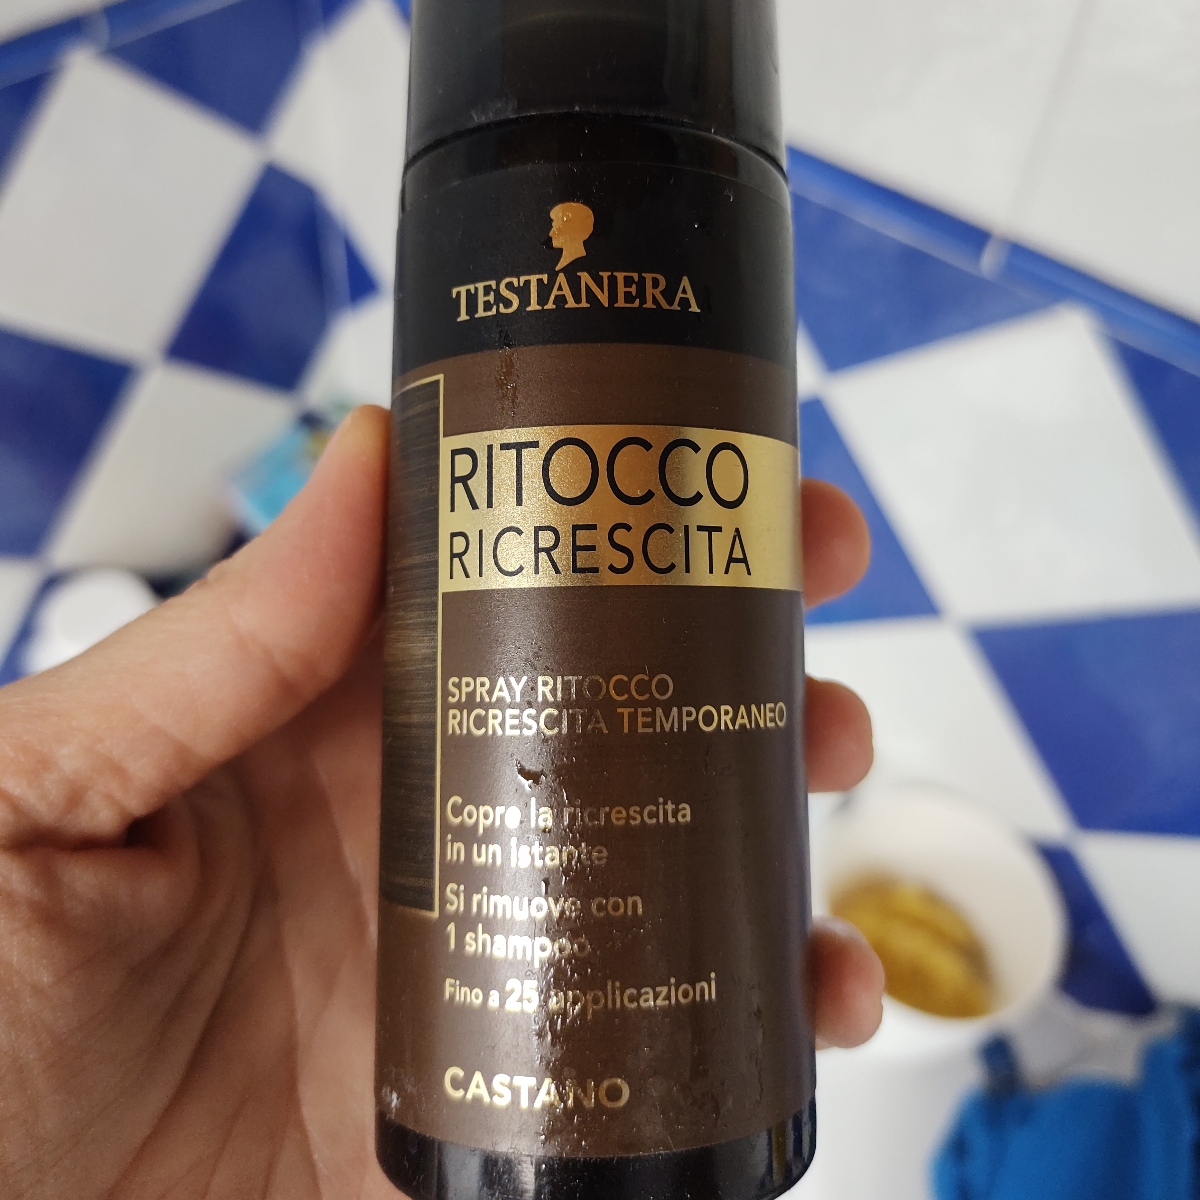 Testanera Ritocco ricrescita Reviews | abillion